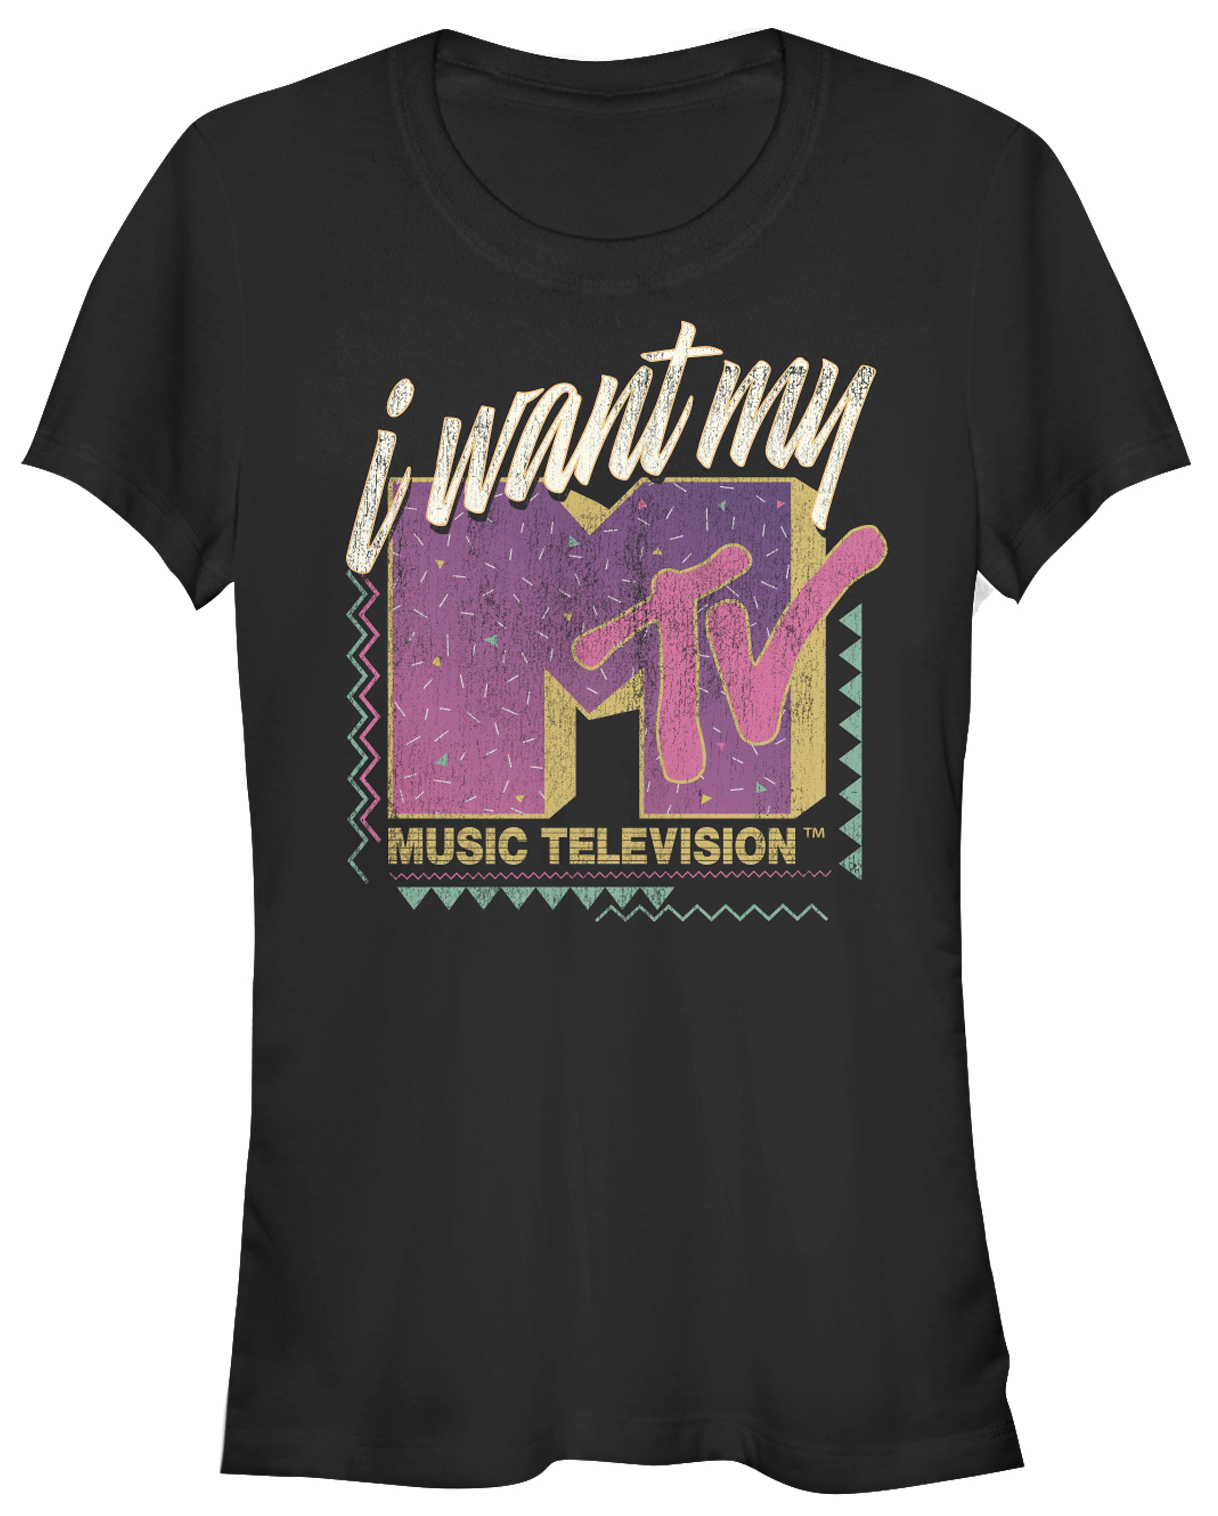 À Manches Longues Slednecks tee shirt MTV BRAND NEW 